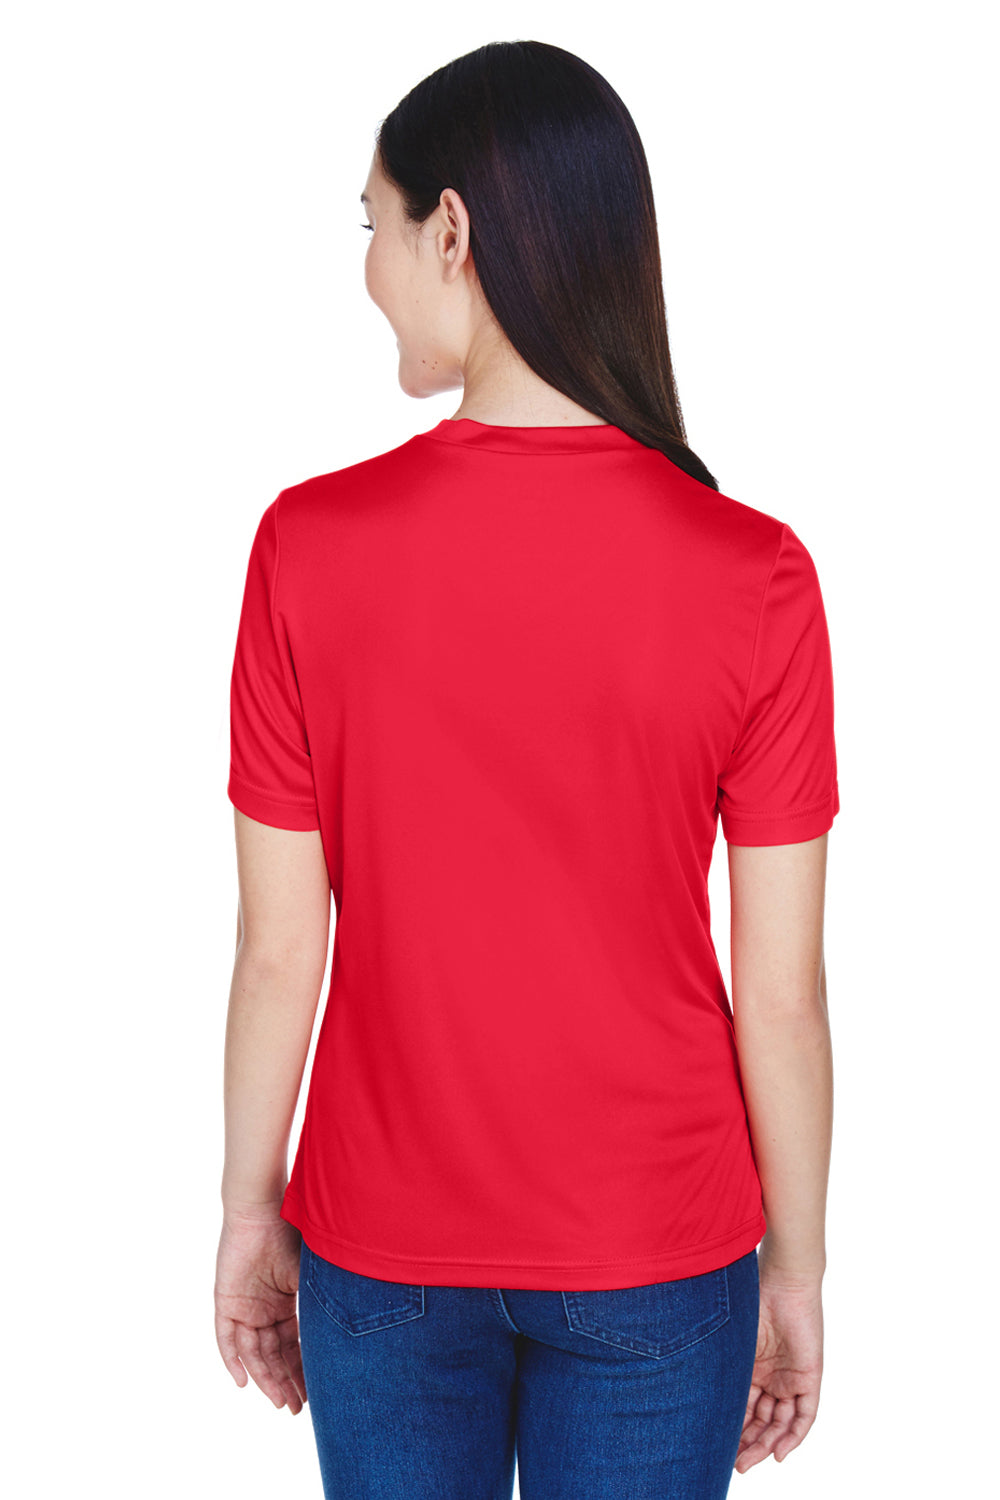 Team 365 TT11W Womens Zone Performance Moisture Wicking Short Sleeve V-Neck T-Shirt Red Back